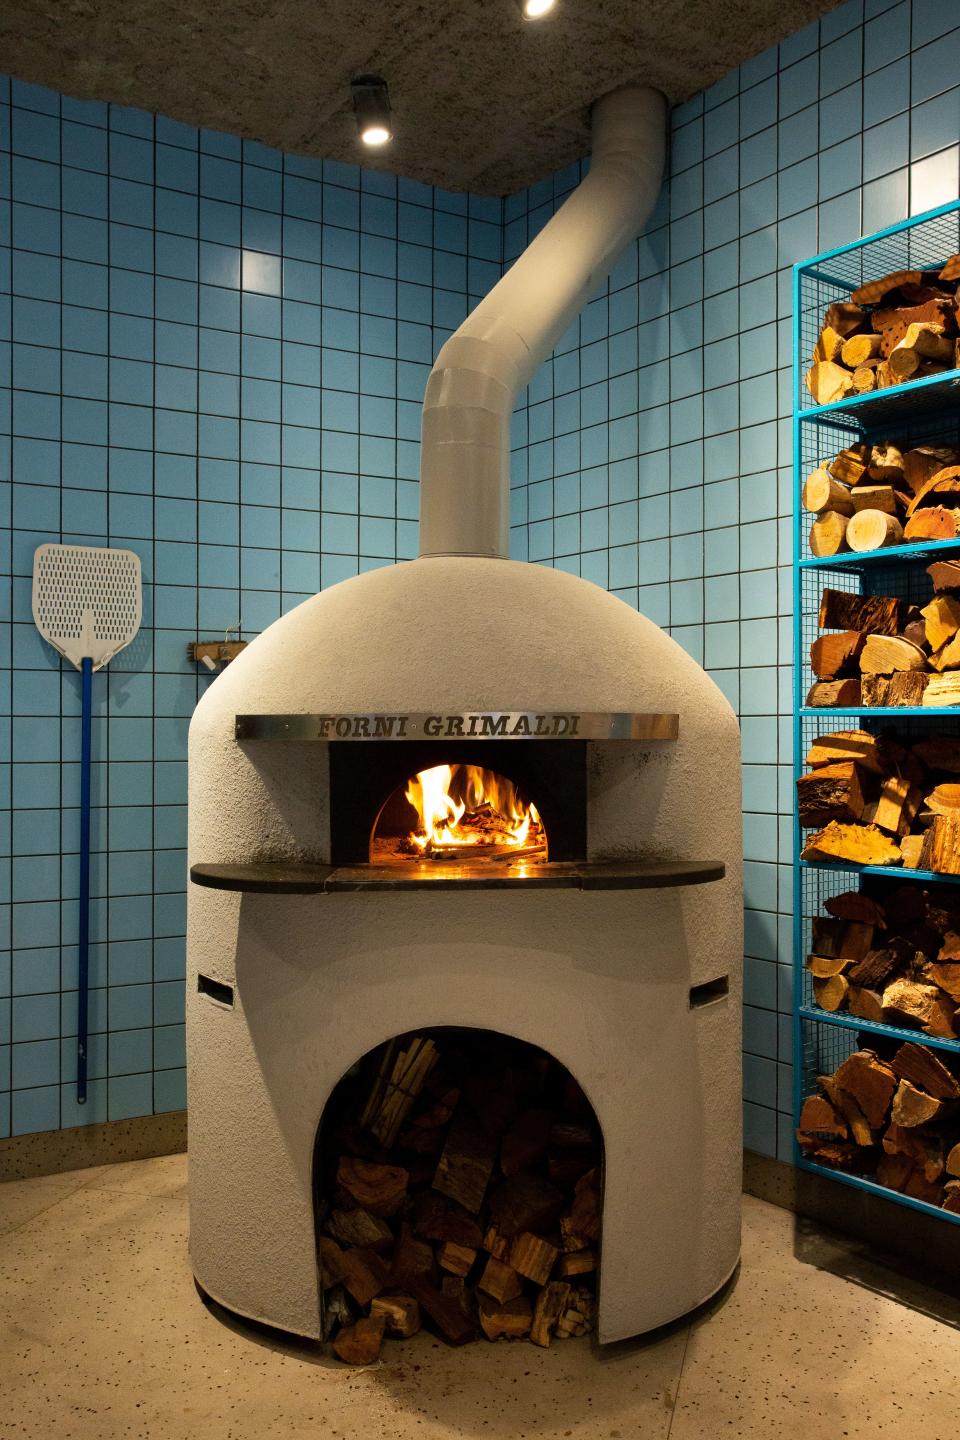 That Forni Grimaldi pizza oven takes center stage.